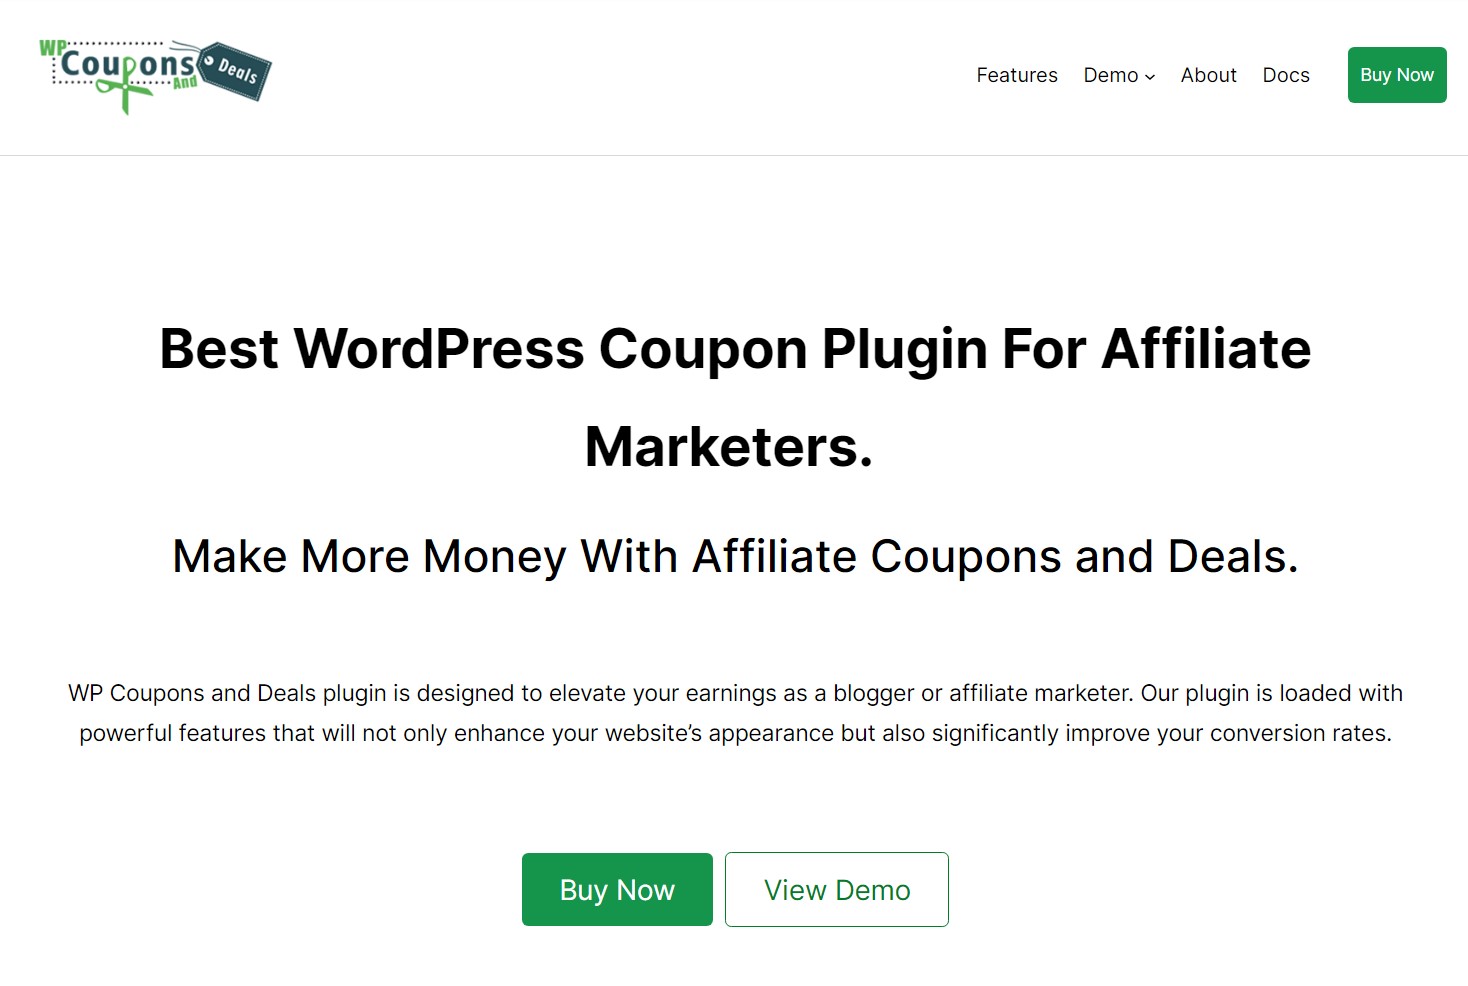 WP Coupons and Deals (Premium) - Best WordPress Coupon Plugin